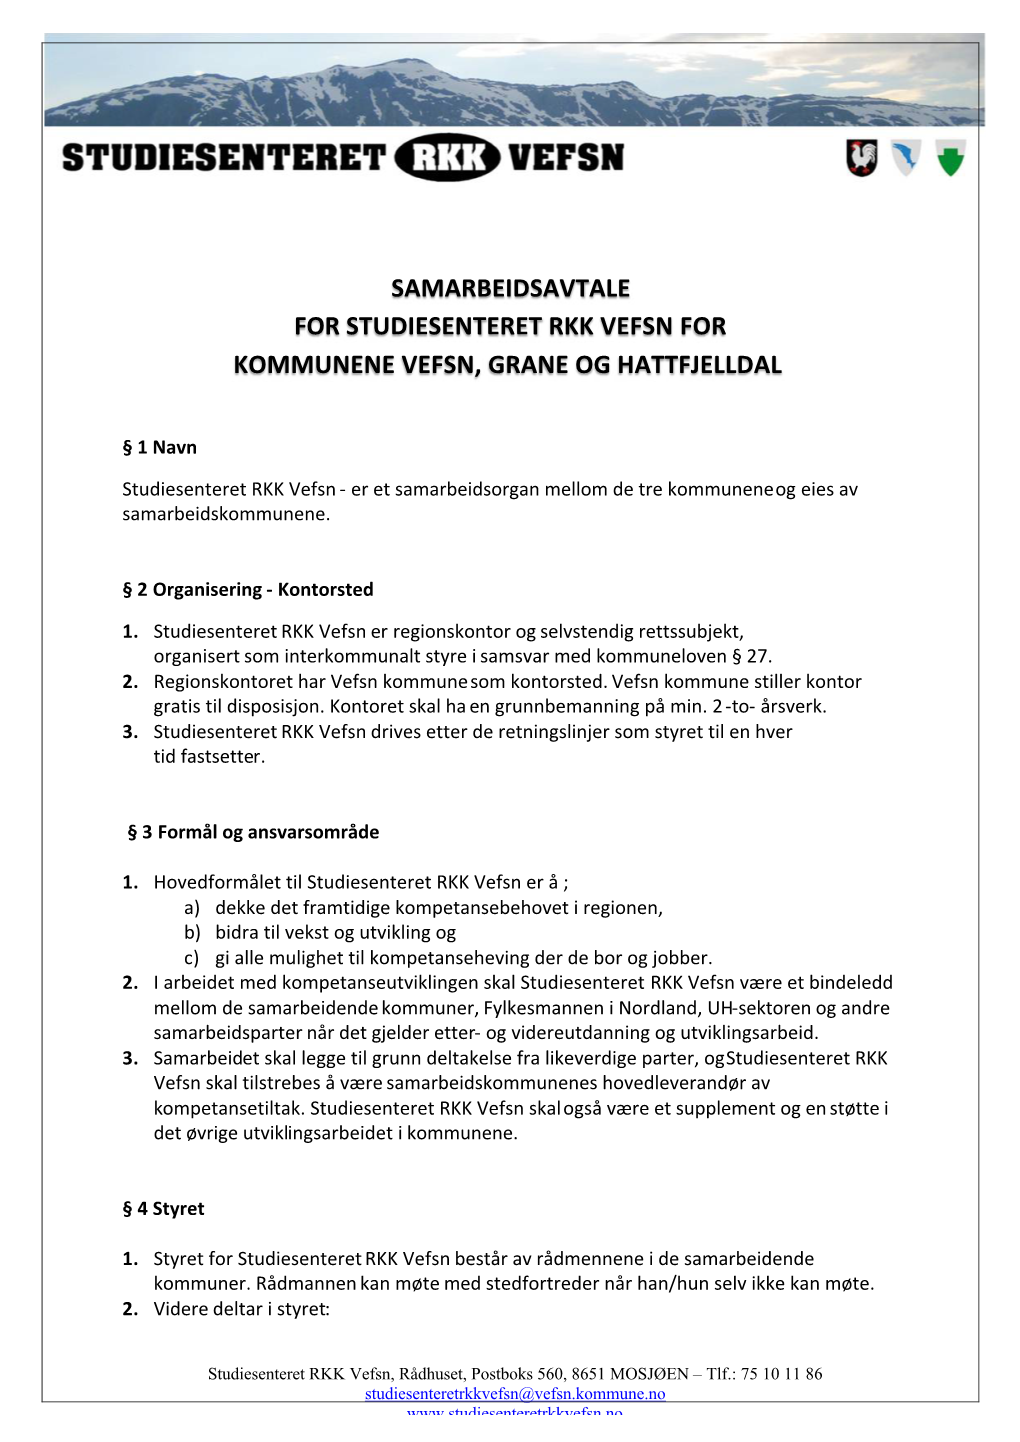 Samarbeidsavtale for Studiesenteret Rkk Vefsn for Kommunene Vefsn, Grane Og Hattfjelldal